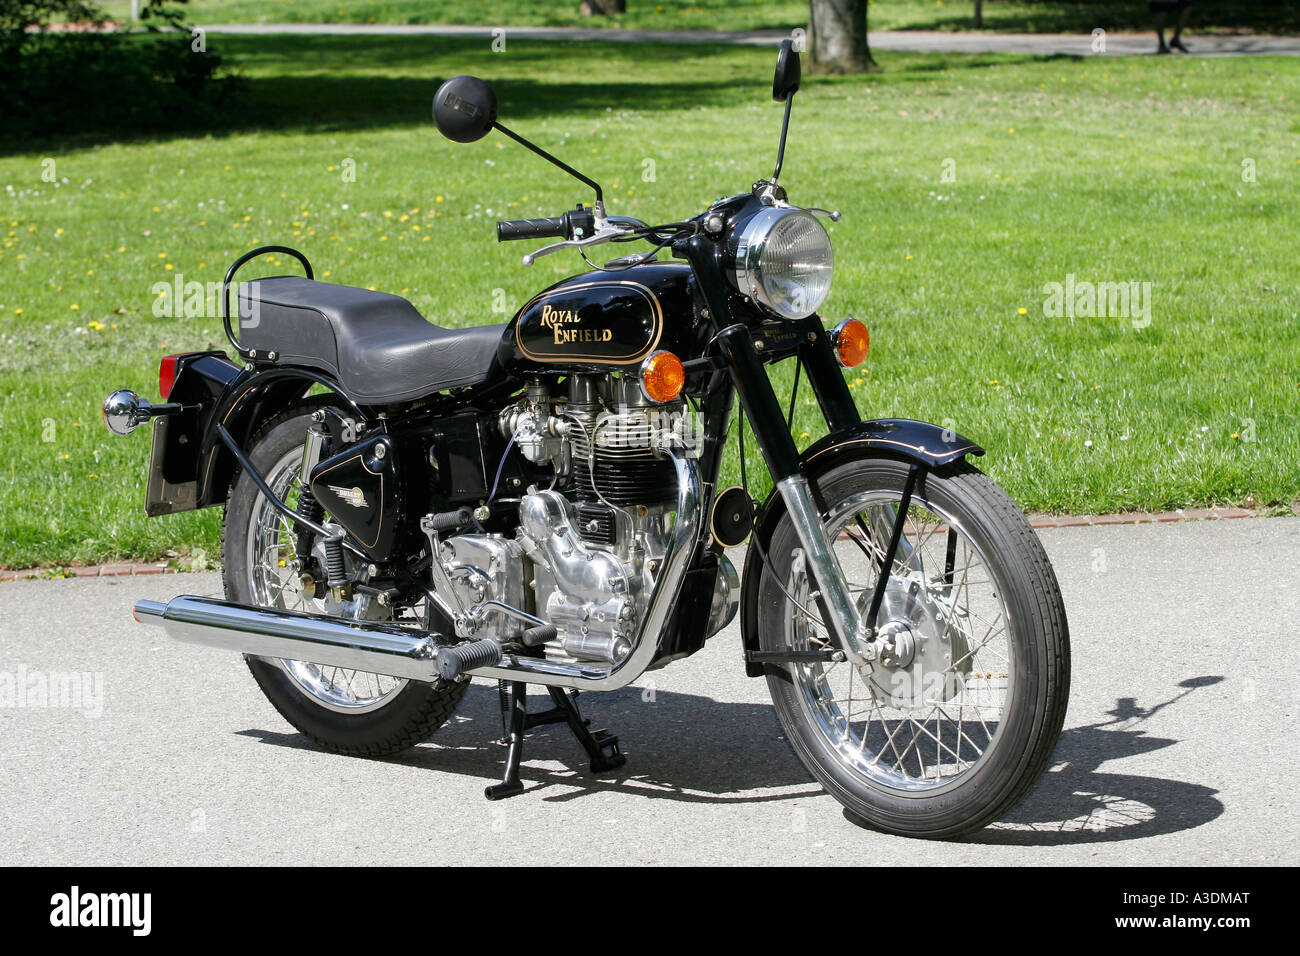 Royal Enfield Bullet 500 motocicleta Fotografía de stock - Alamy